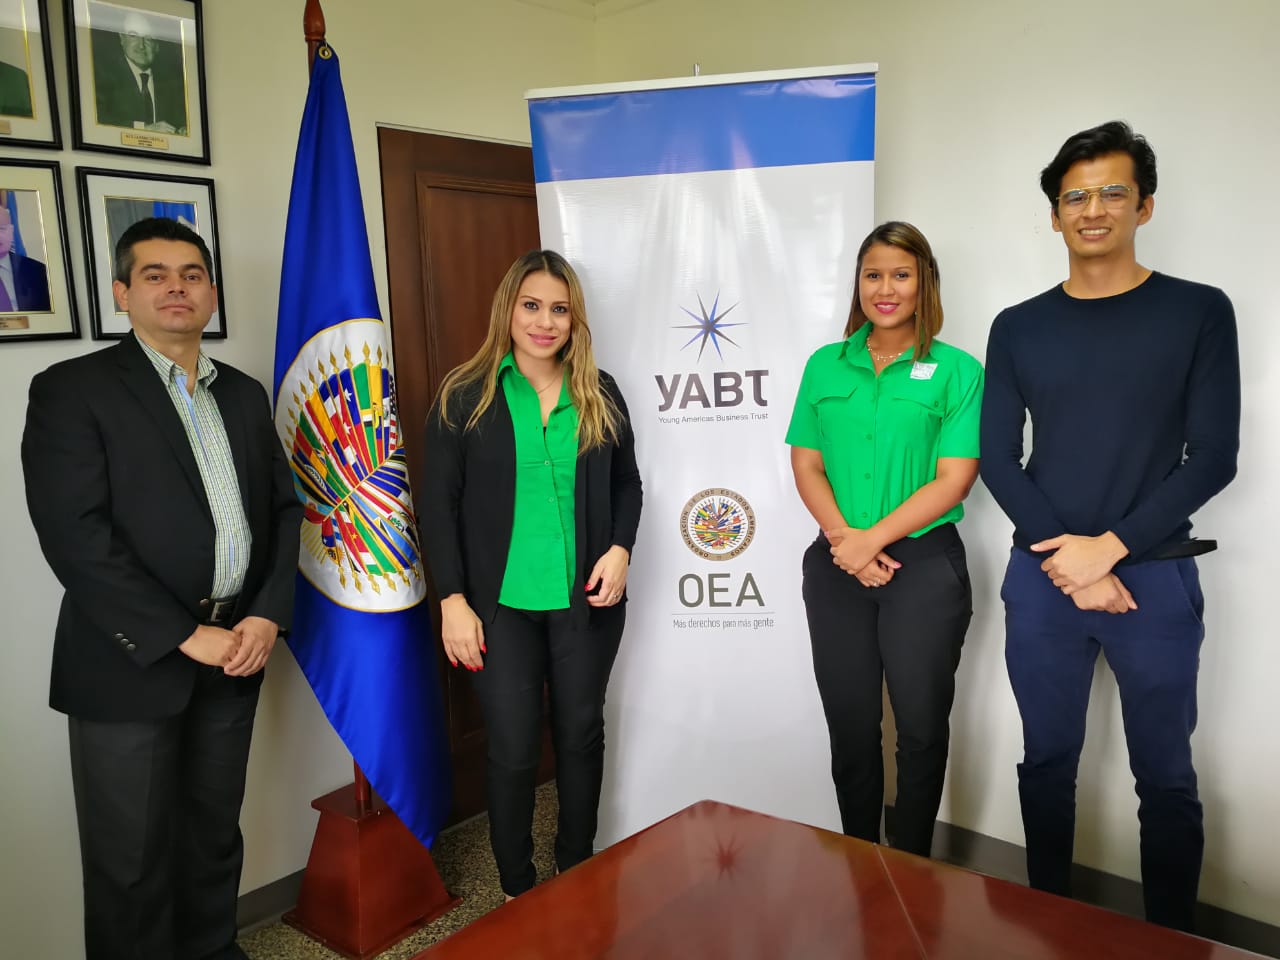 Reunión de miembros de la OEA/YABT en Panamá con representantes del Ministerio de Ambiente de Panamá para identificar programas y oportunidades para jóvenes en materia de sostenibilidad, liderazgo y emprendimiento.